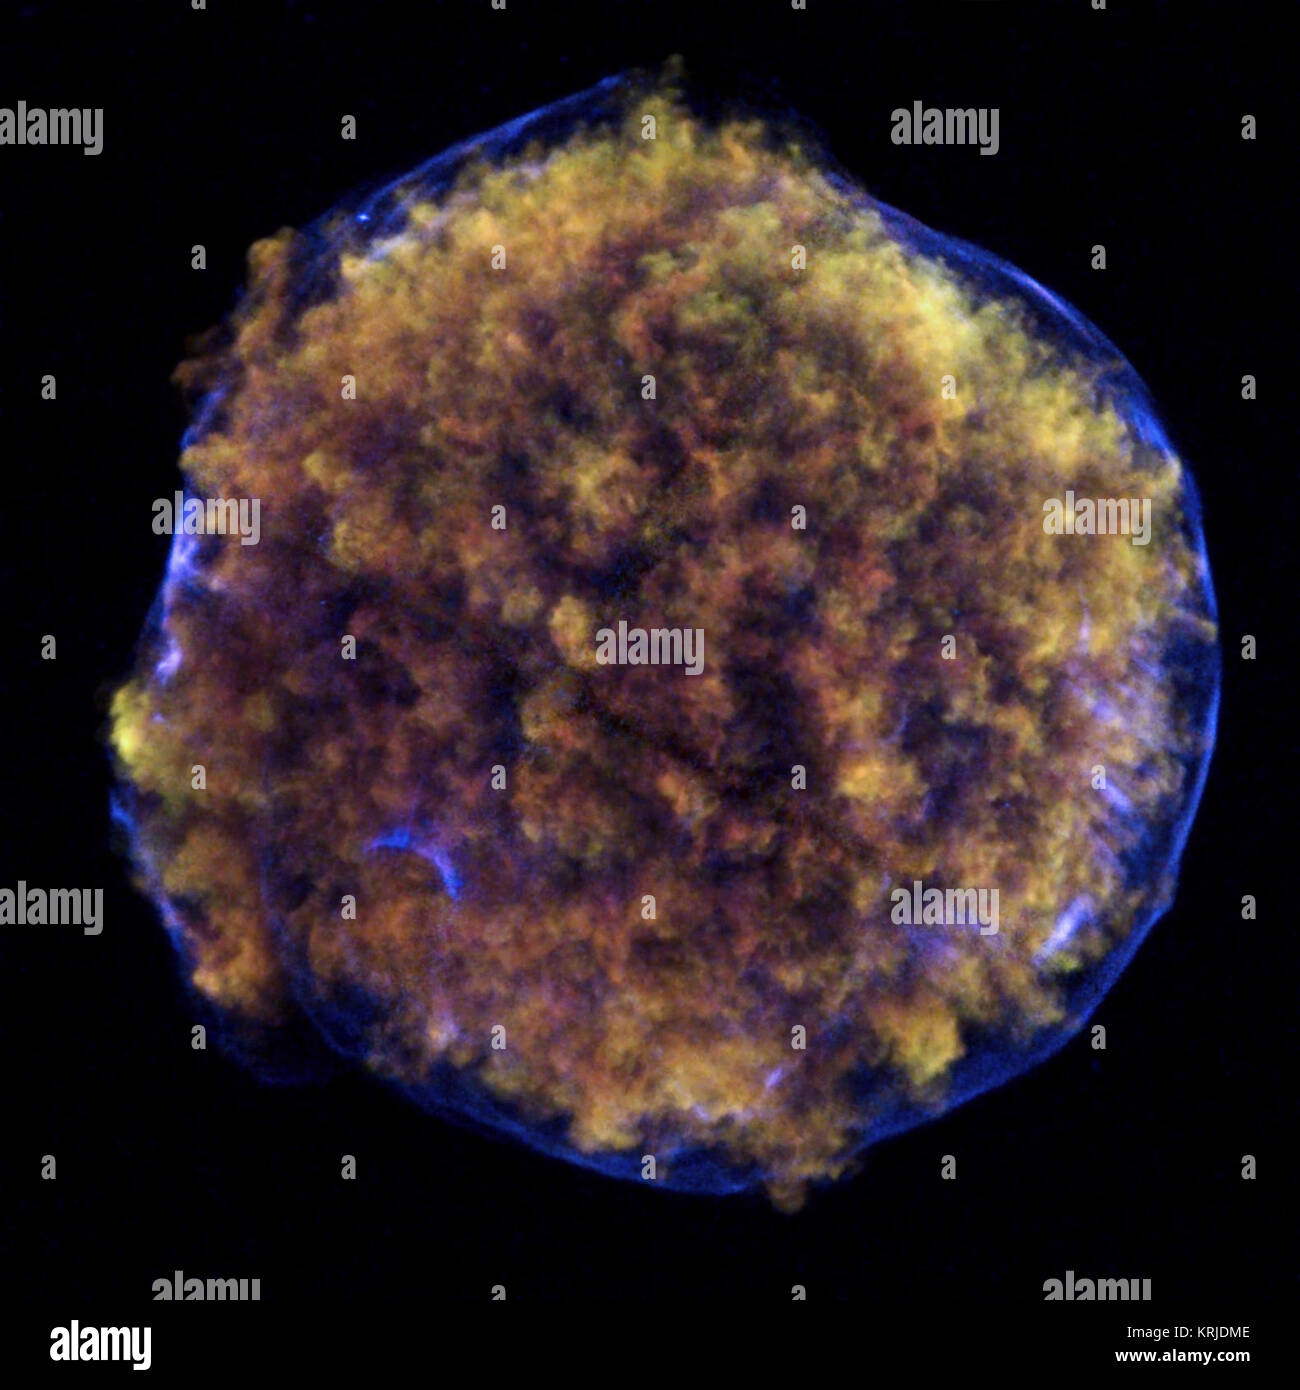 Cette Chandra image de la supernova de Tycho contient de nouvelles preuves de ce qui a déclenché l'explosion de supernova. Tycho a été formé par supernova de type Ia, une catégorie d'explosion stellaire utilisés pour la mesure de distances astronomiques fiables en raison de leur luminosité. Dans la région de Tycho inférieur gauche est un arc bleu de l'émission des rayons X. Plusieurs éléments de preuve appuient la conclusion que cet arc est due à une onde de choc créé quand une naine blanche a explosé et a retiré la surface d'une étoile compagnon. Cette prise en charge d'un scénario populaire pour le déclenchement d'un super Type Ia Banque D'Images